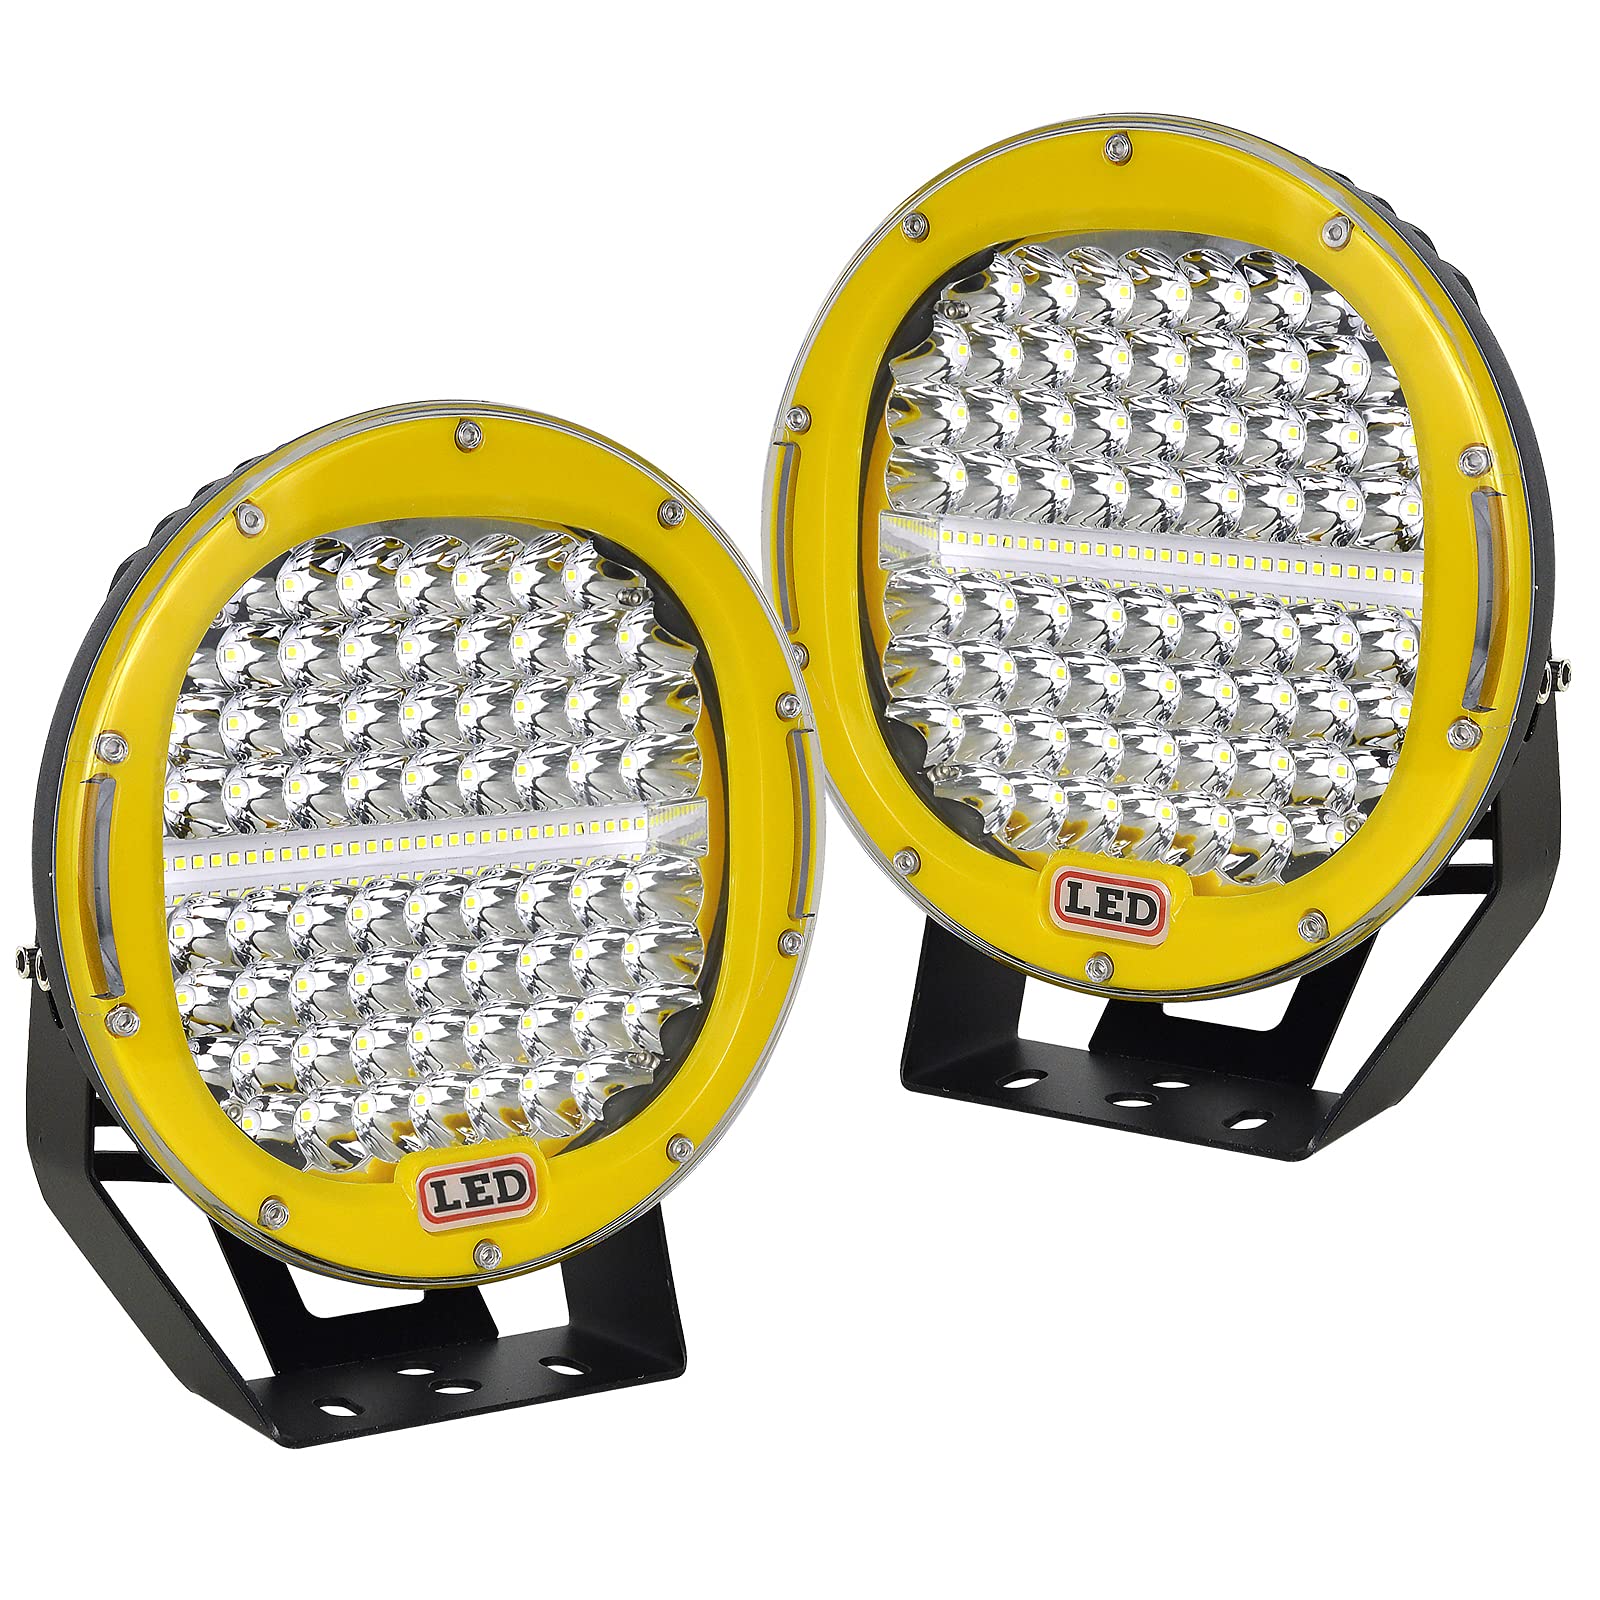 AUXTINGS 2 Stück 22,9 cm 294W LED Pods Lichtleiste gelb rund 24000 lm wasserdicht Spot Beam Led Arbeitslicht Off Road Lichter Fahrlicht Kompatibel mit LKW SUV ATV Traktor Boot von AUXTINGS